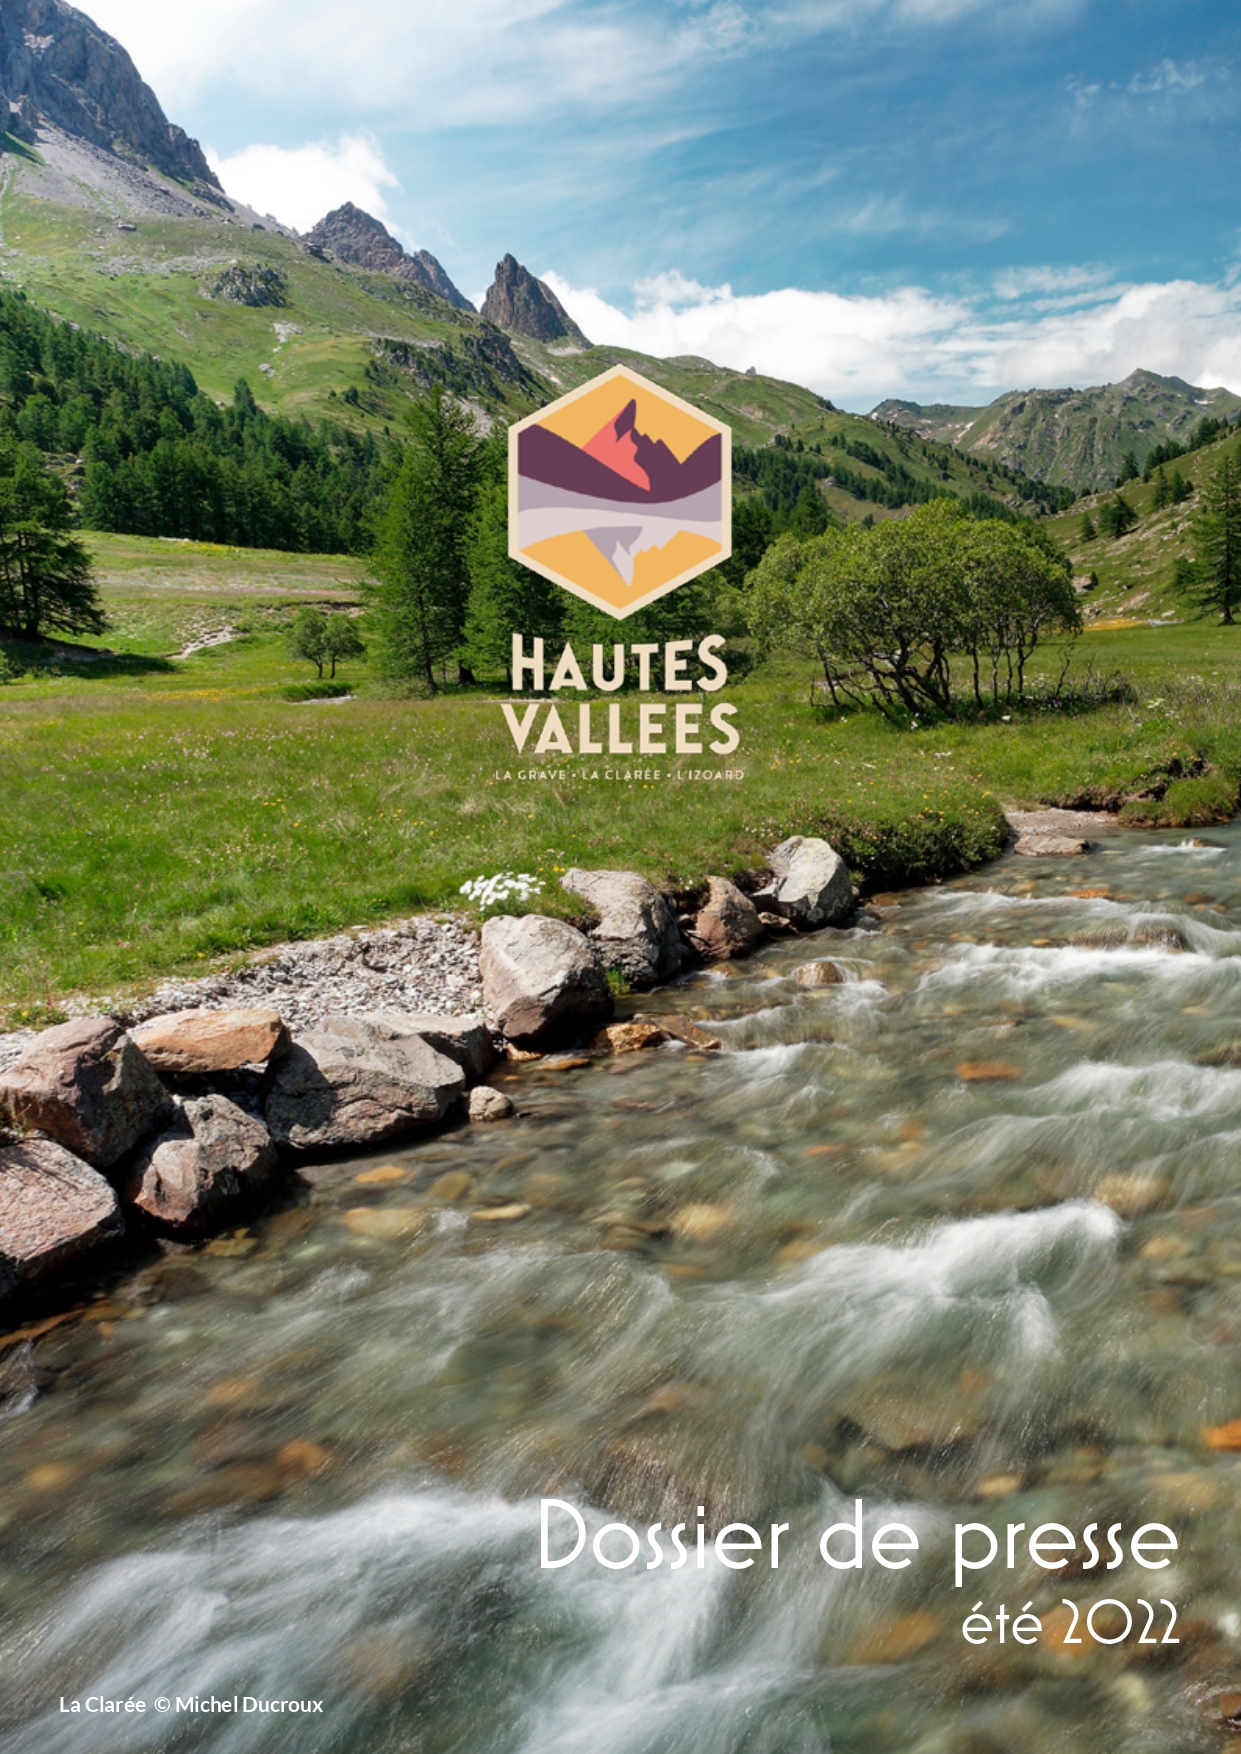 dossier de presse été 2022 Hautes Vallées Alpes du sud 